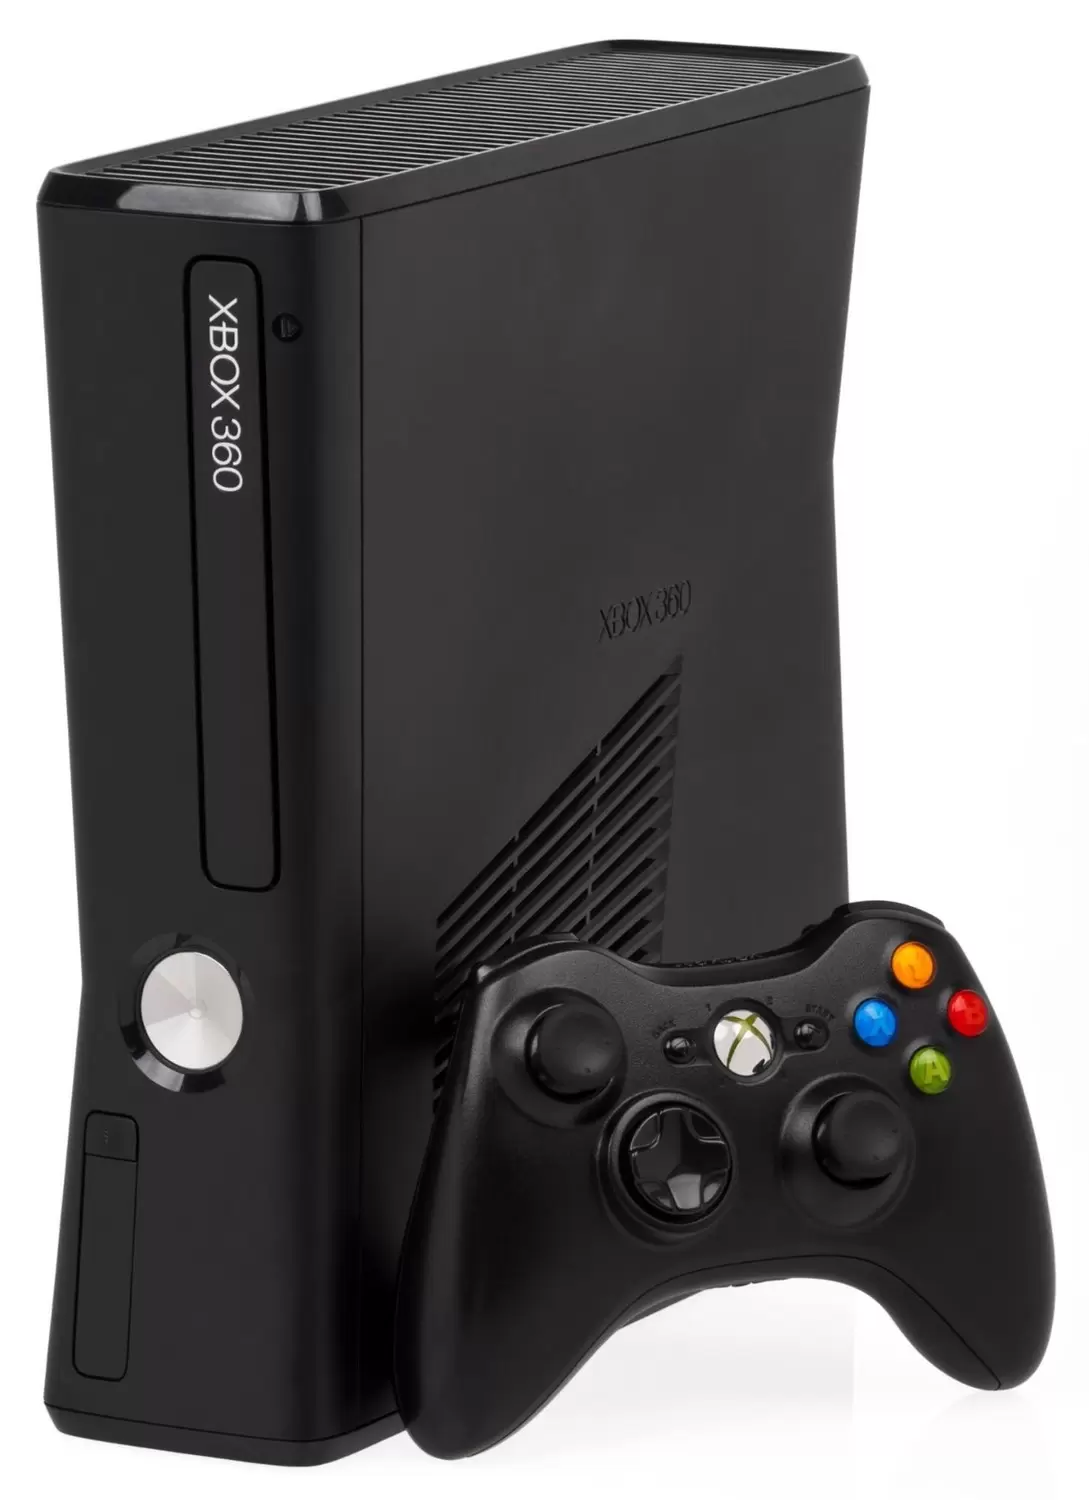 Matériel XBOX 360 - Xbox 360 Slim noir